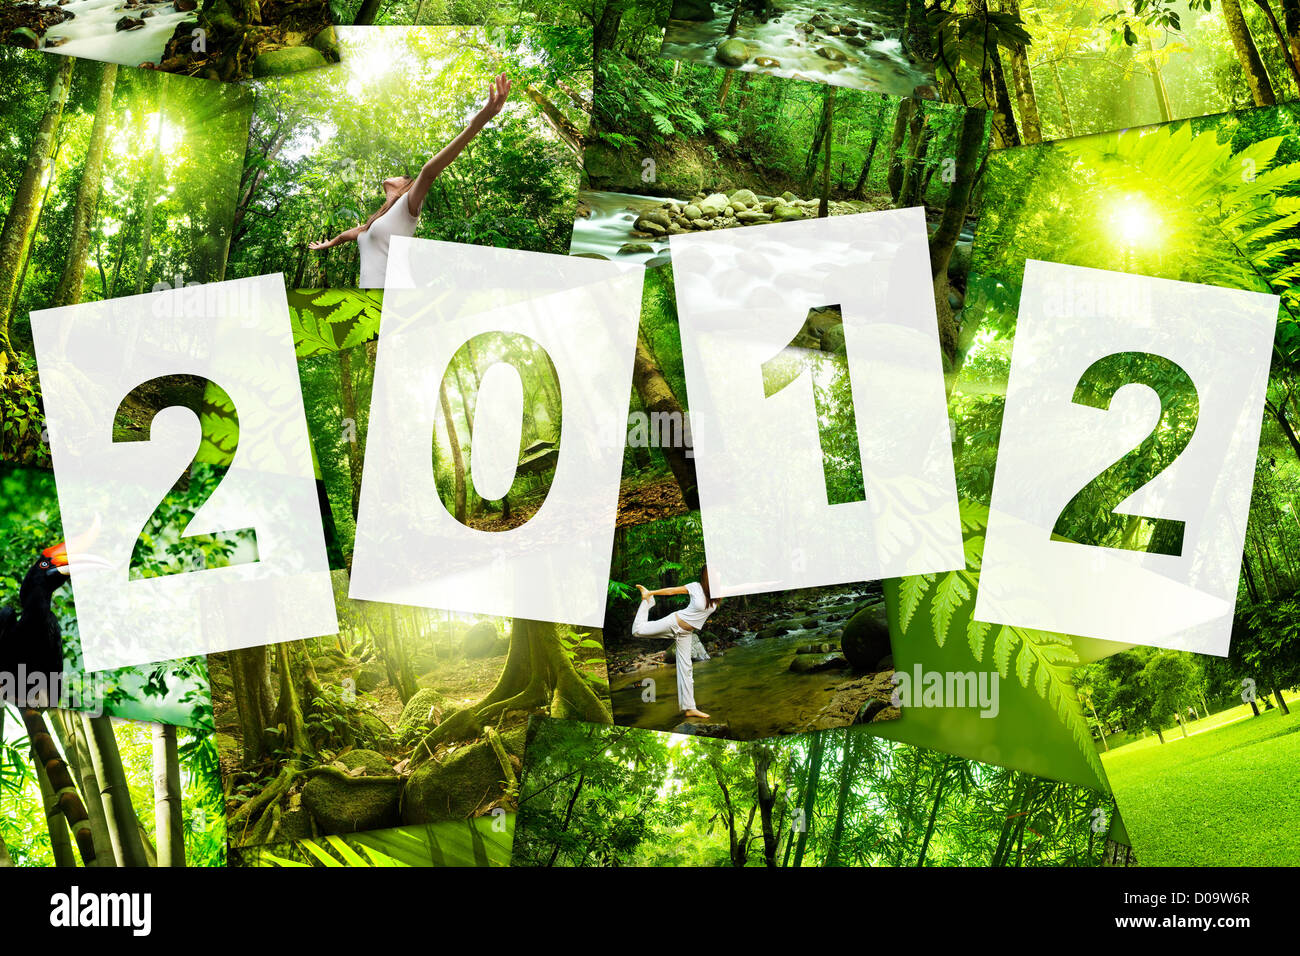 Alle Bilder zu mir gehört 2012 Natur Konzept Kalender decken, Stockfoto